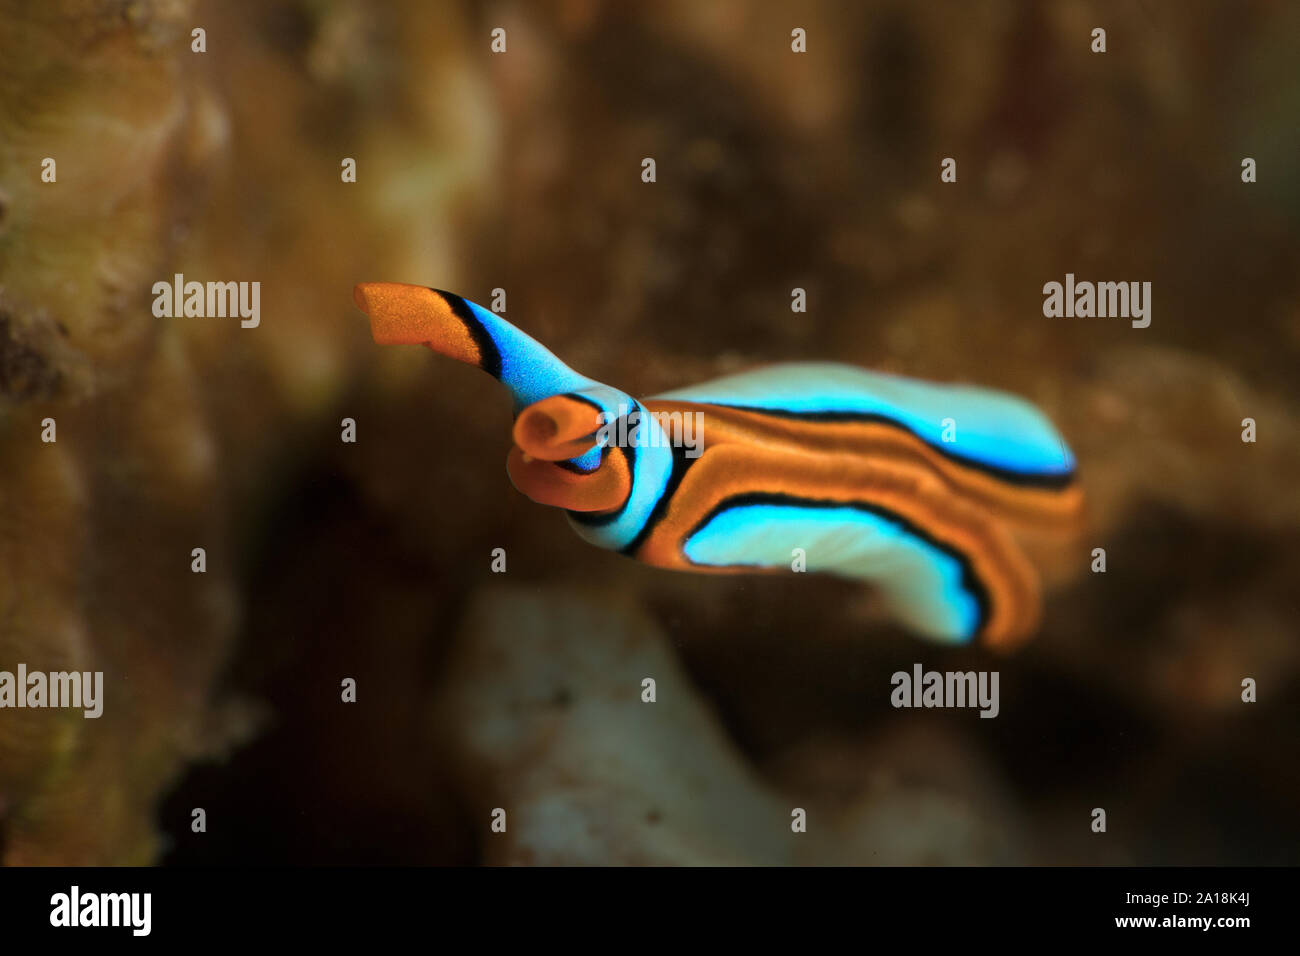 Sea slug Thuridilla lineolata. Underwater macro picture from diving in Ambon, Indonesia Stock Photo